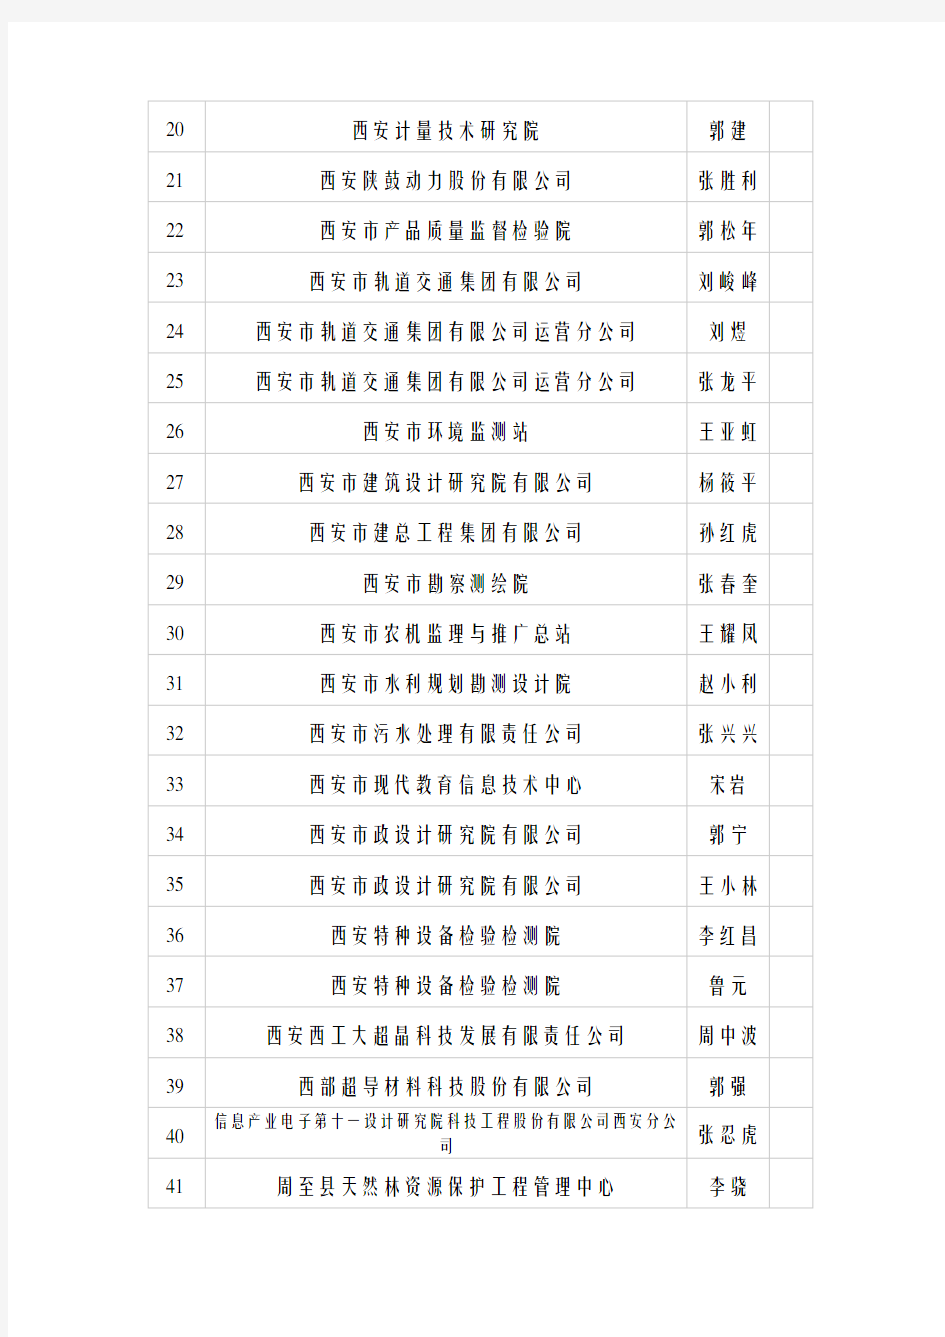 2019年度全省正高级工程师公示人员名单【模板】